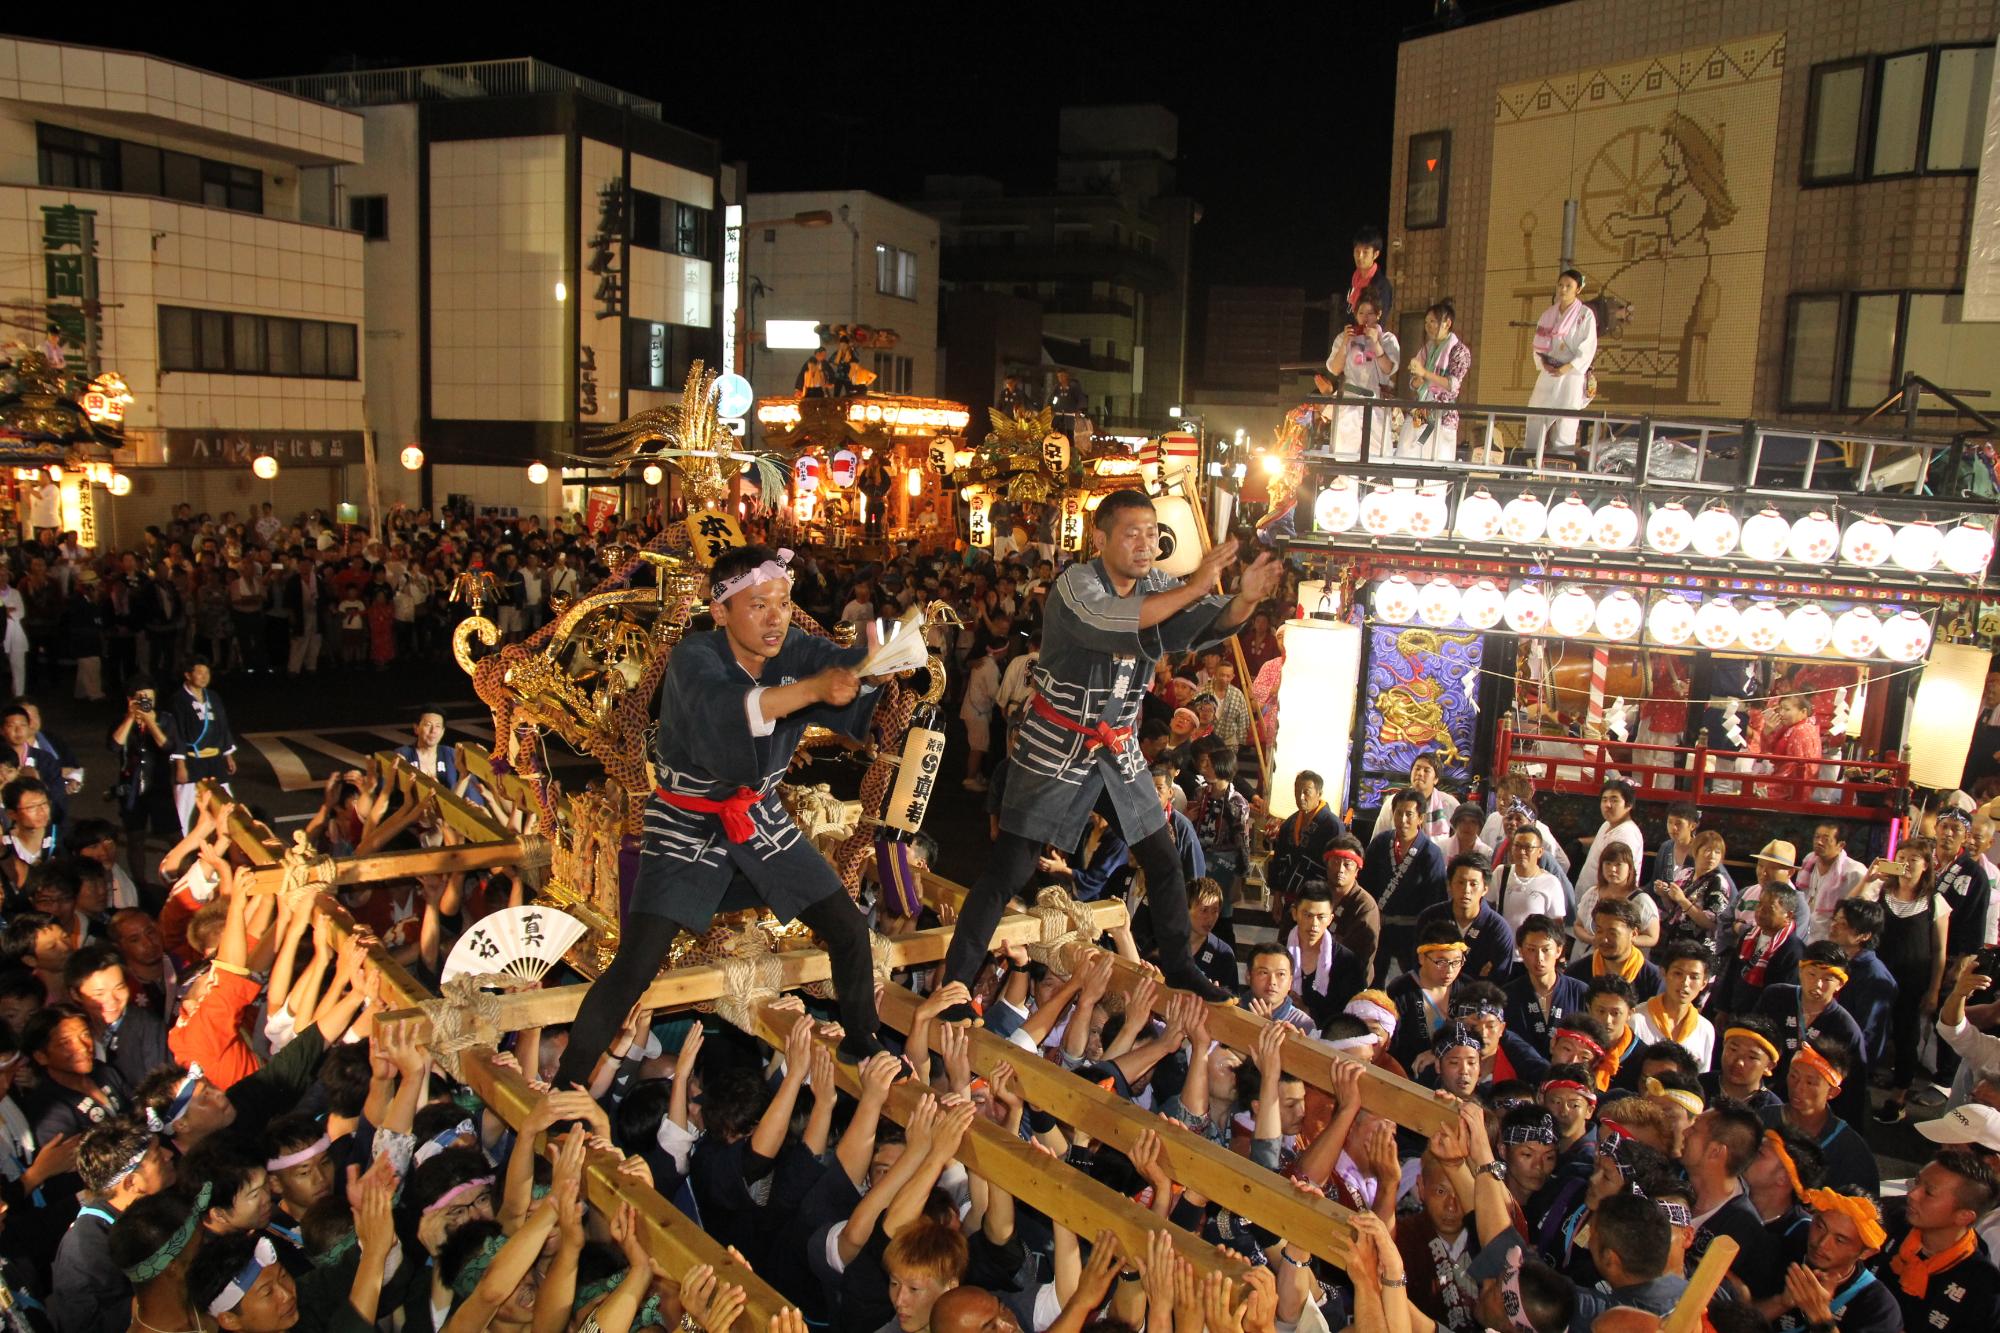 お神輿の上に2名の男性が乗りにぎわっているお祭りの写真